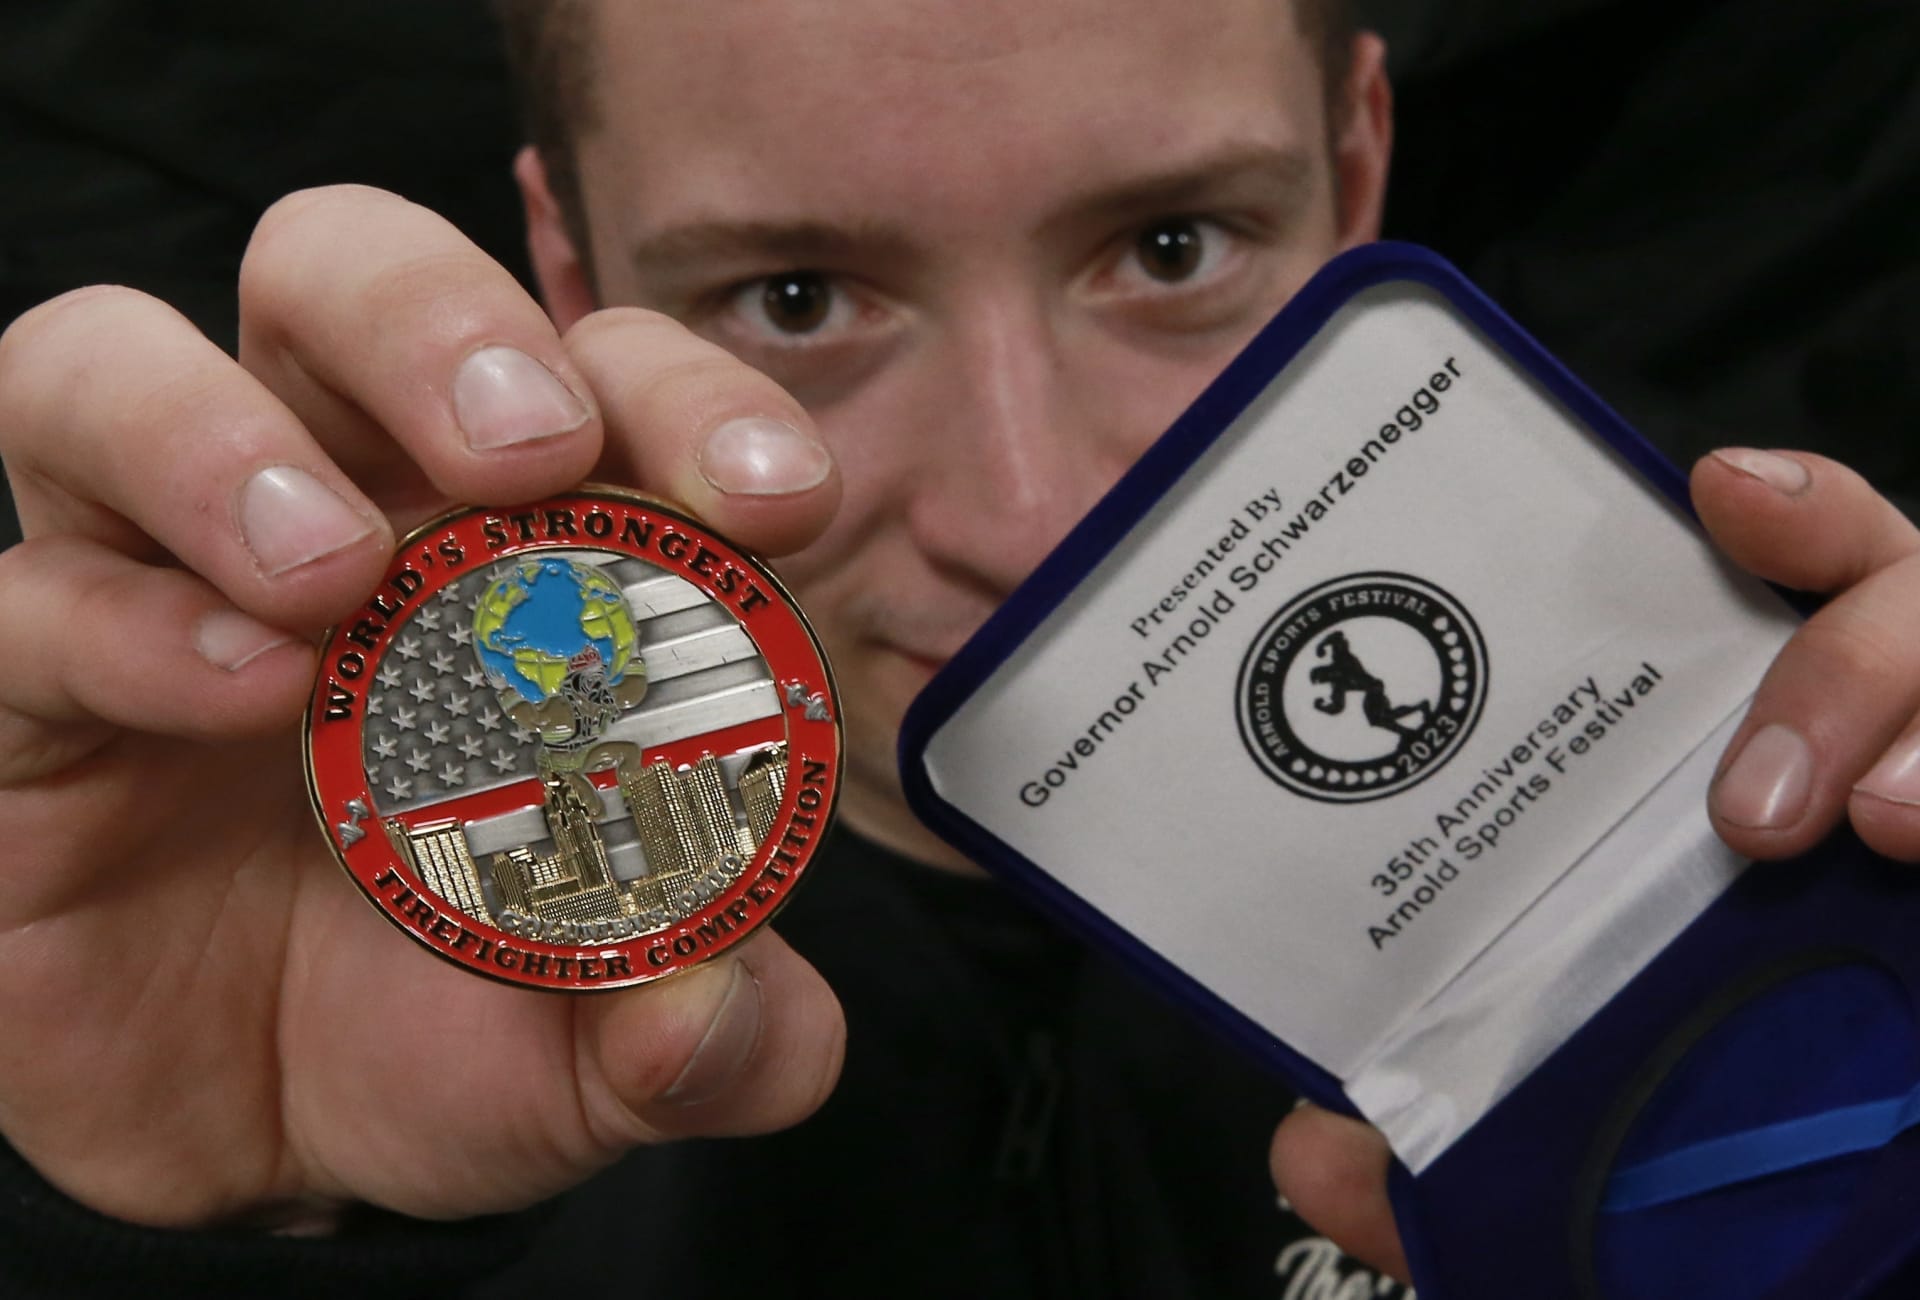 Tuhle medaili si Jan Pipiš přivezl z Ameriky.